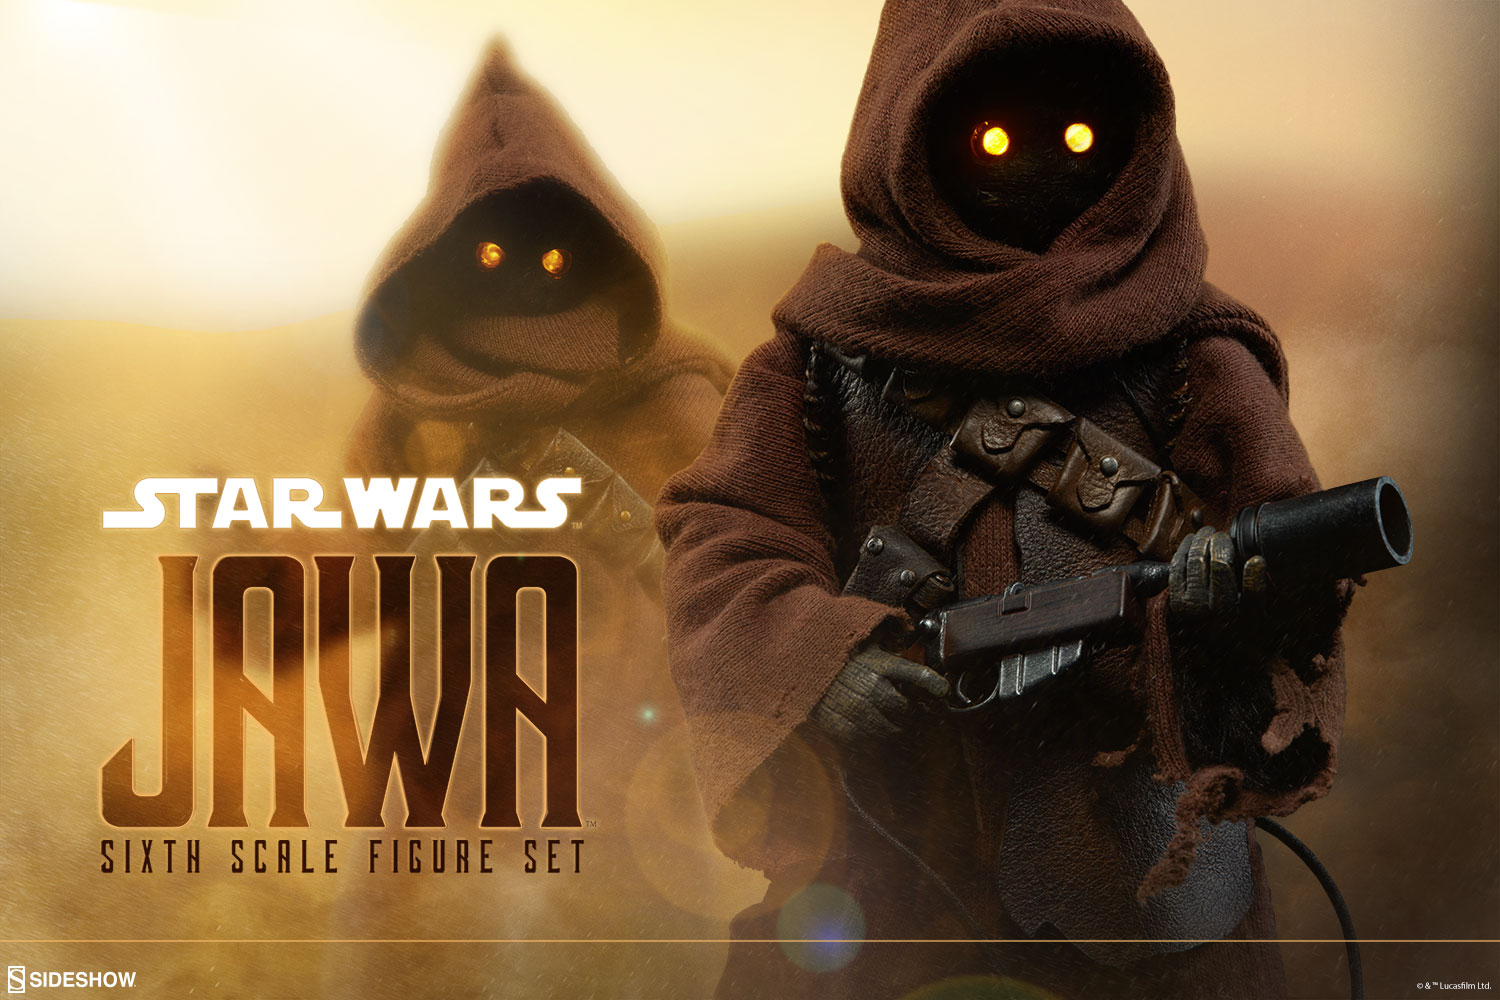  Jawa   Collection  Star  Wars  Universe